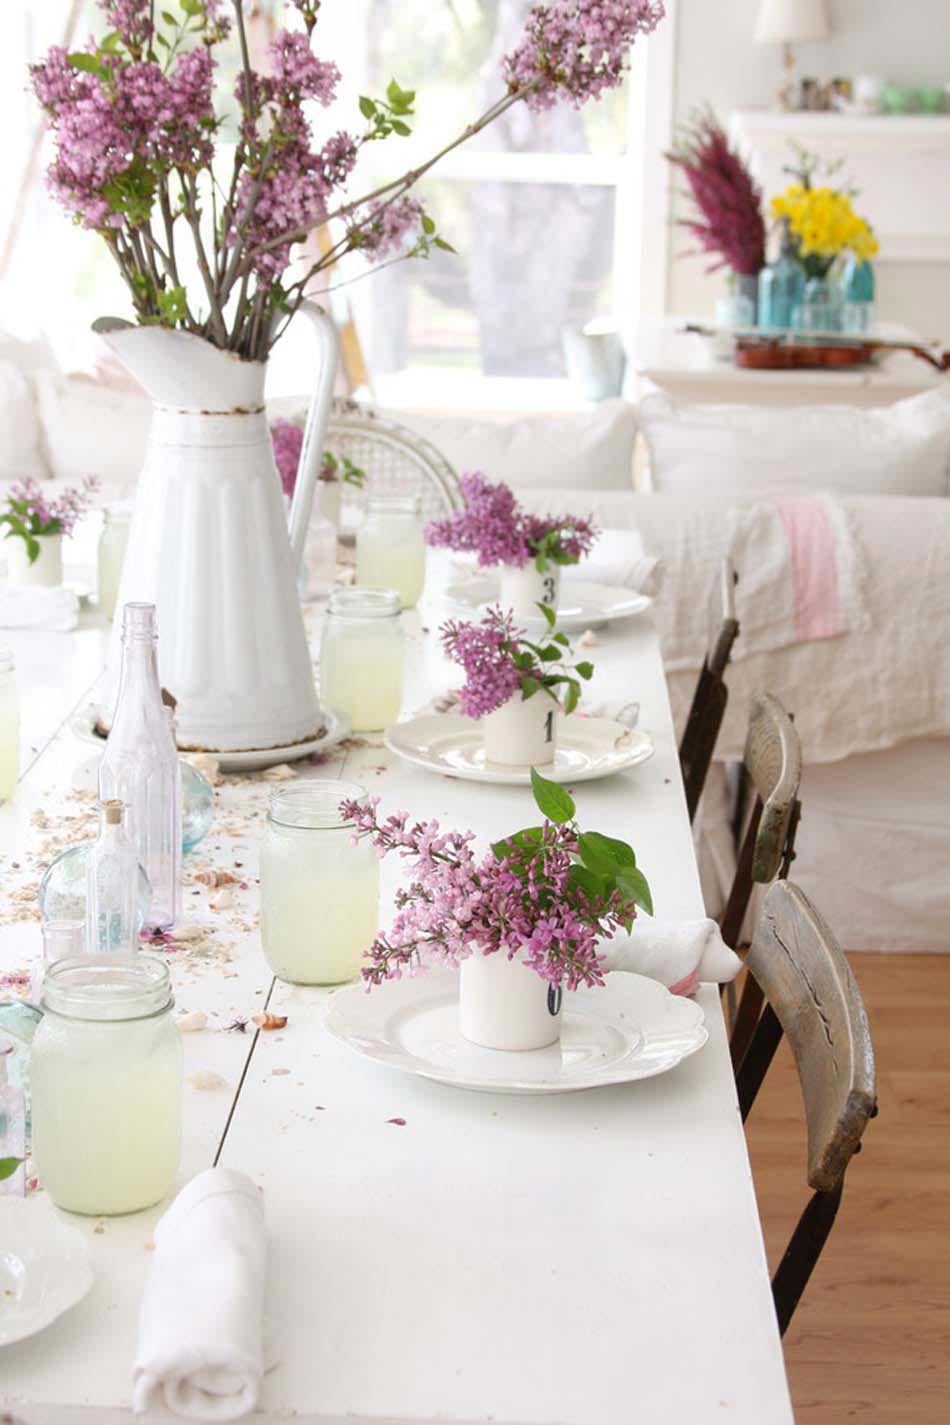 déco table fleurs nappe blanche